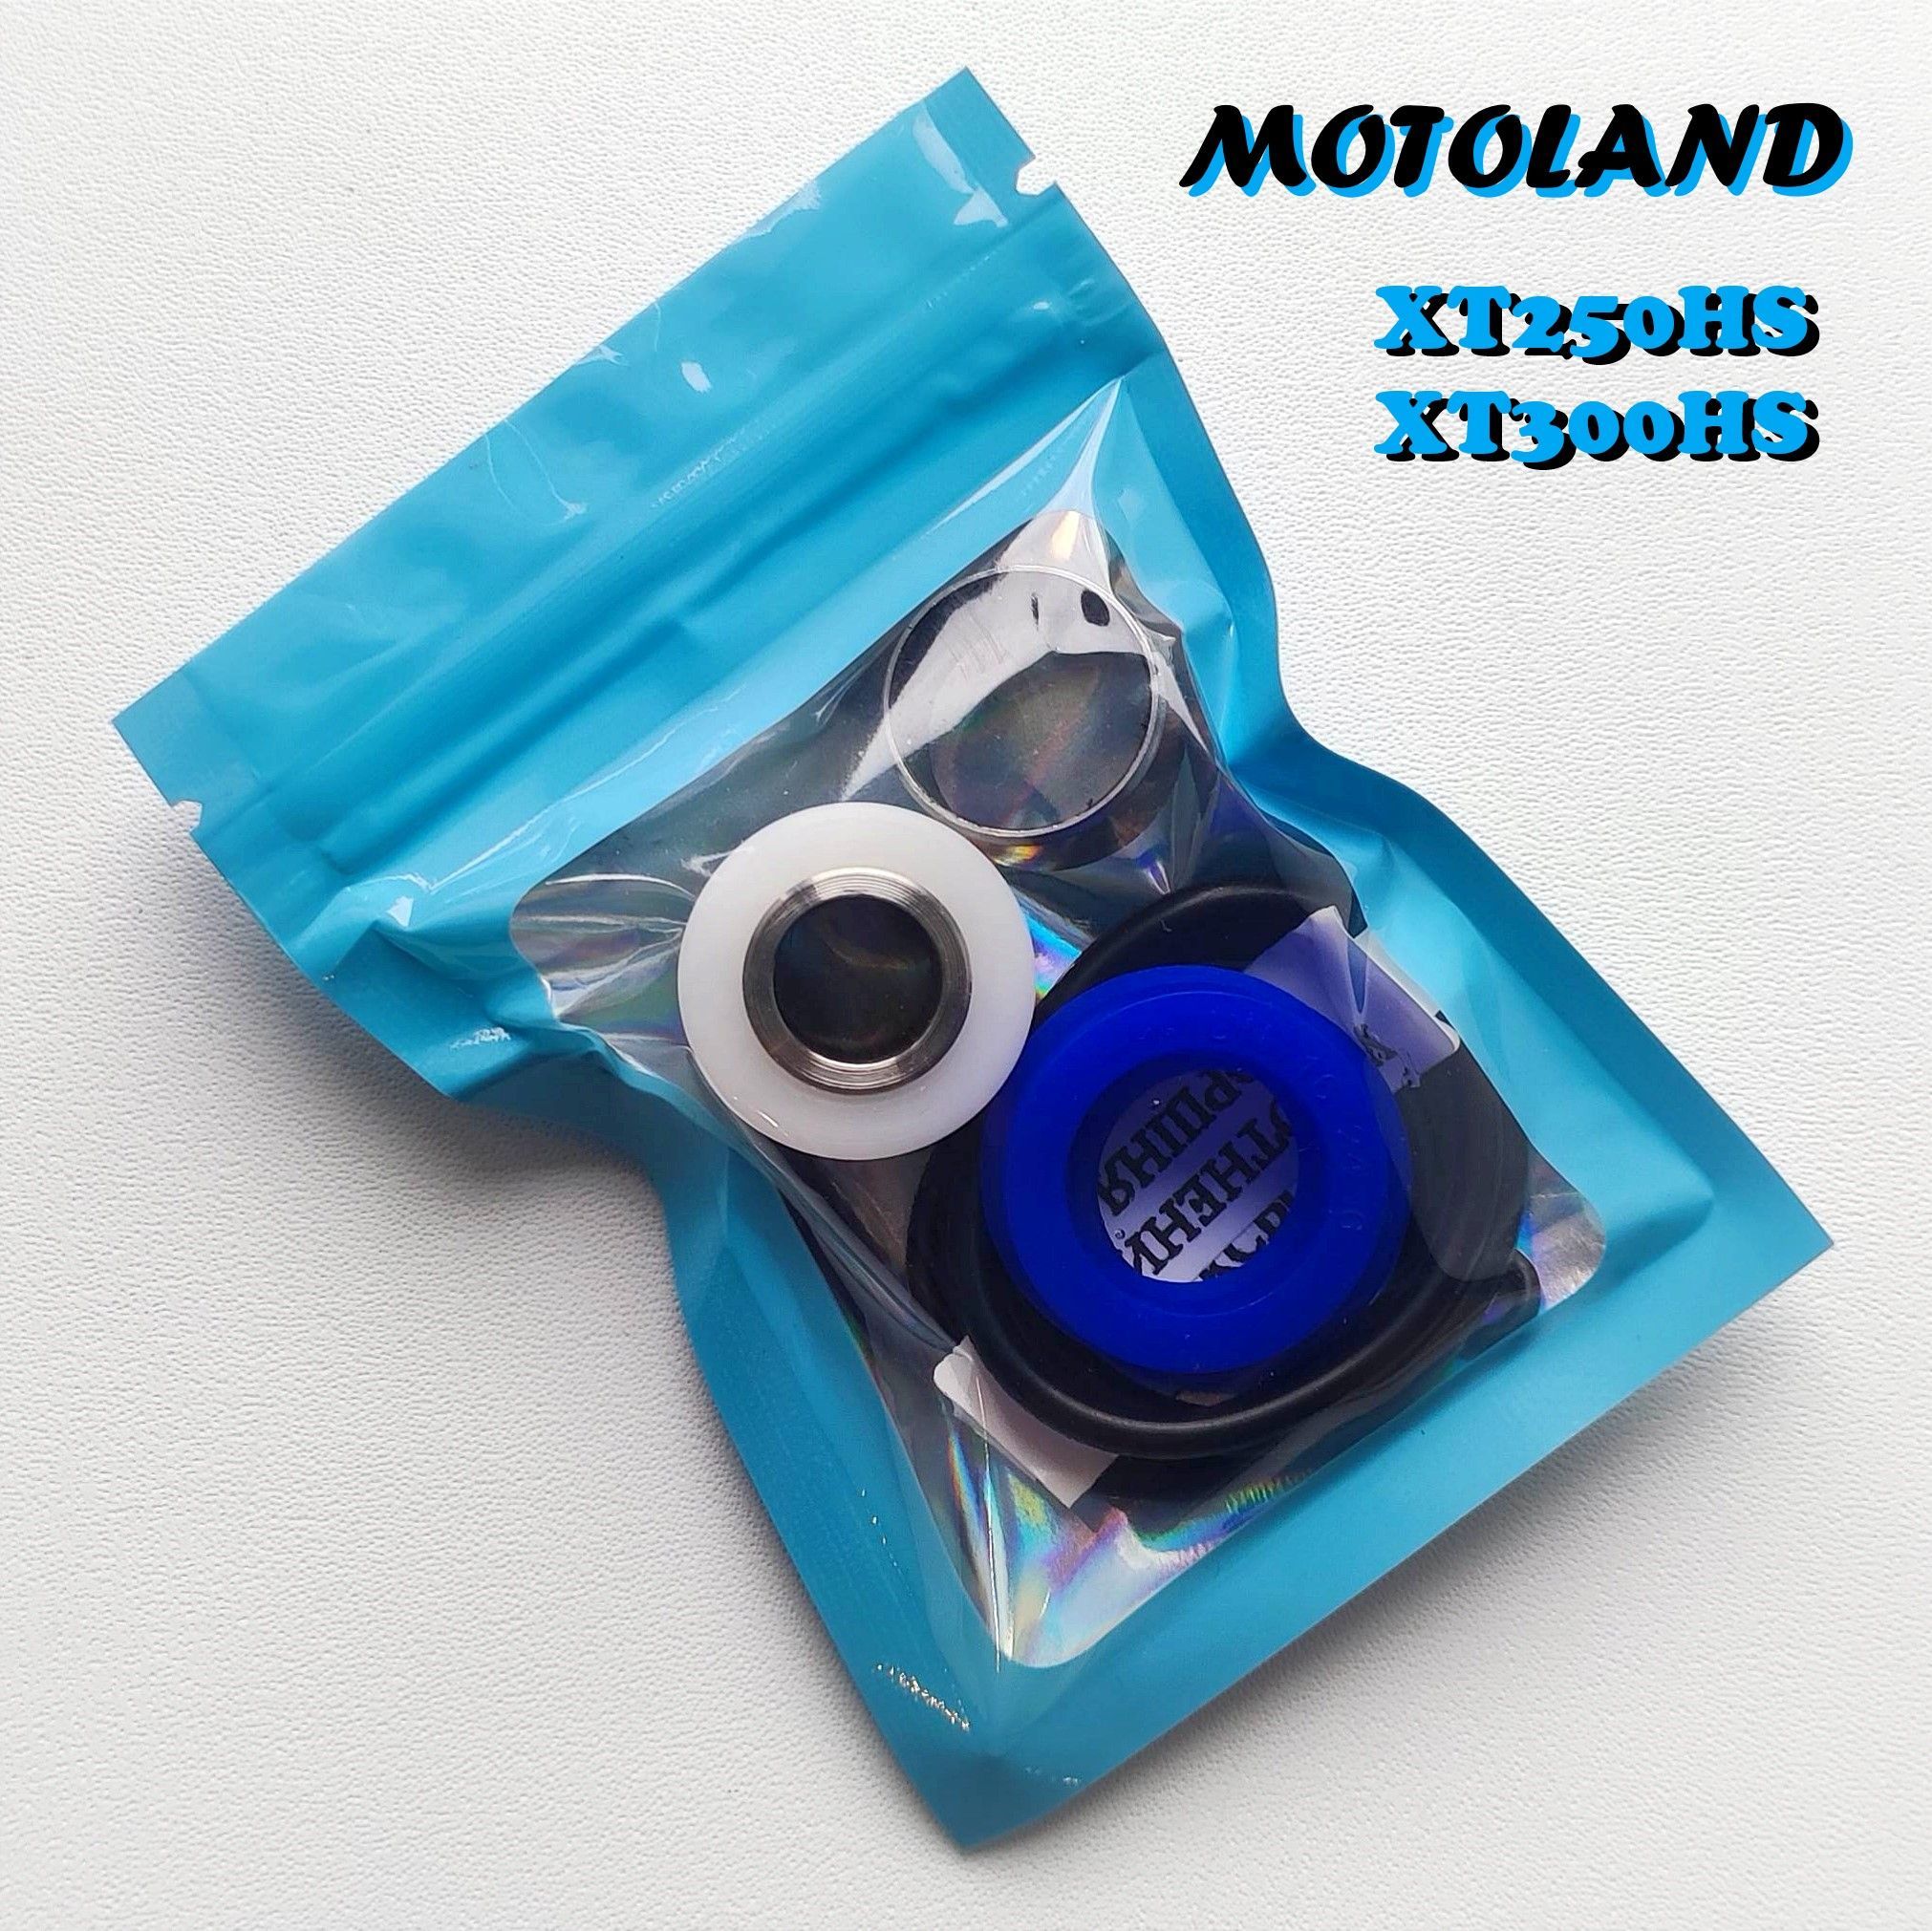 Ремкомплектамортизаторамотоцикла"Motoland"XT250HS/XT300HS(+втулкапроушины)